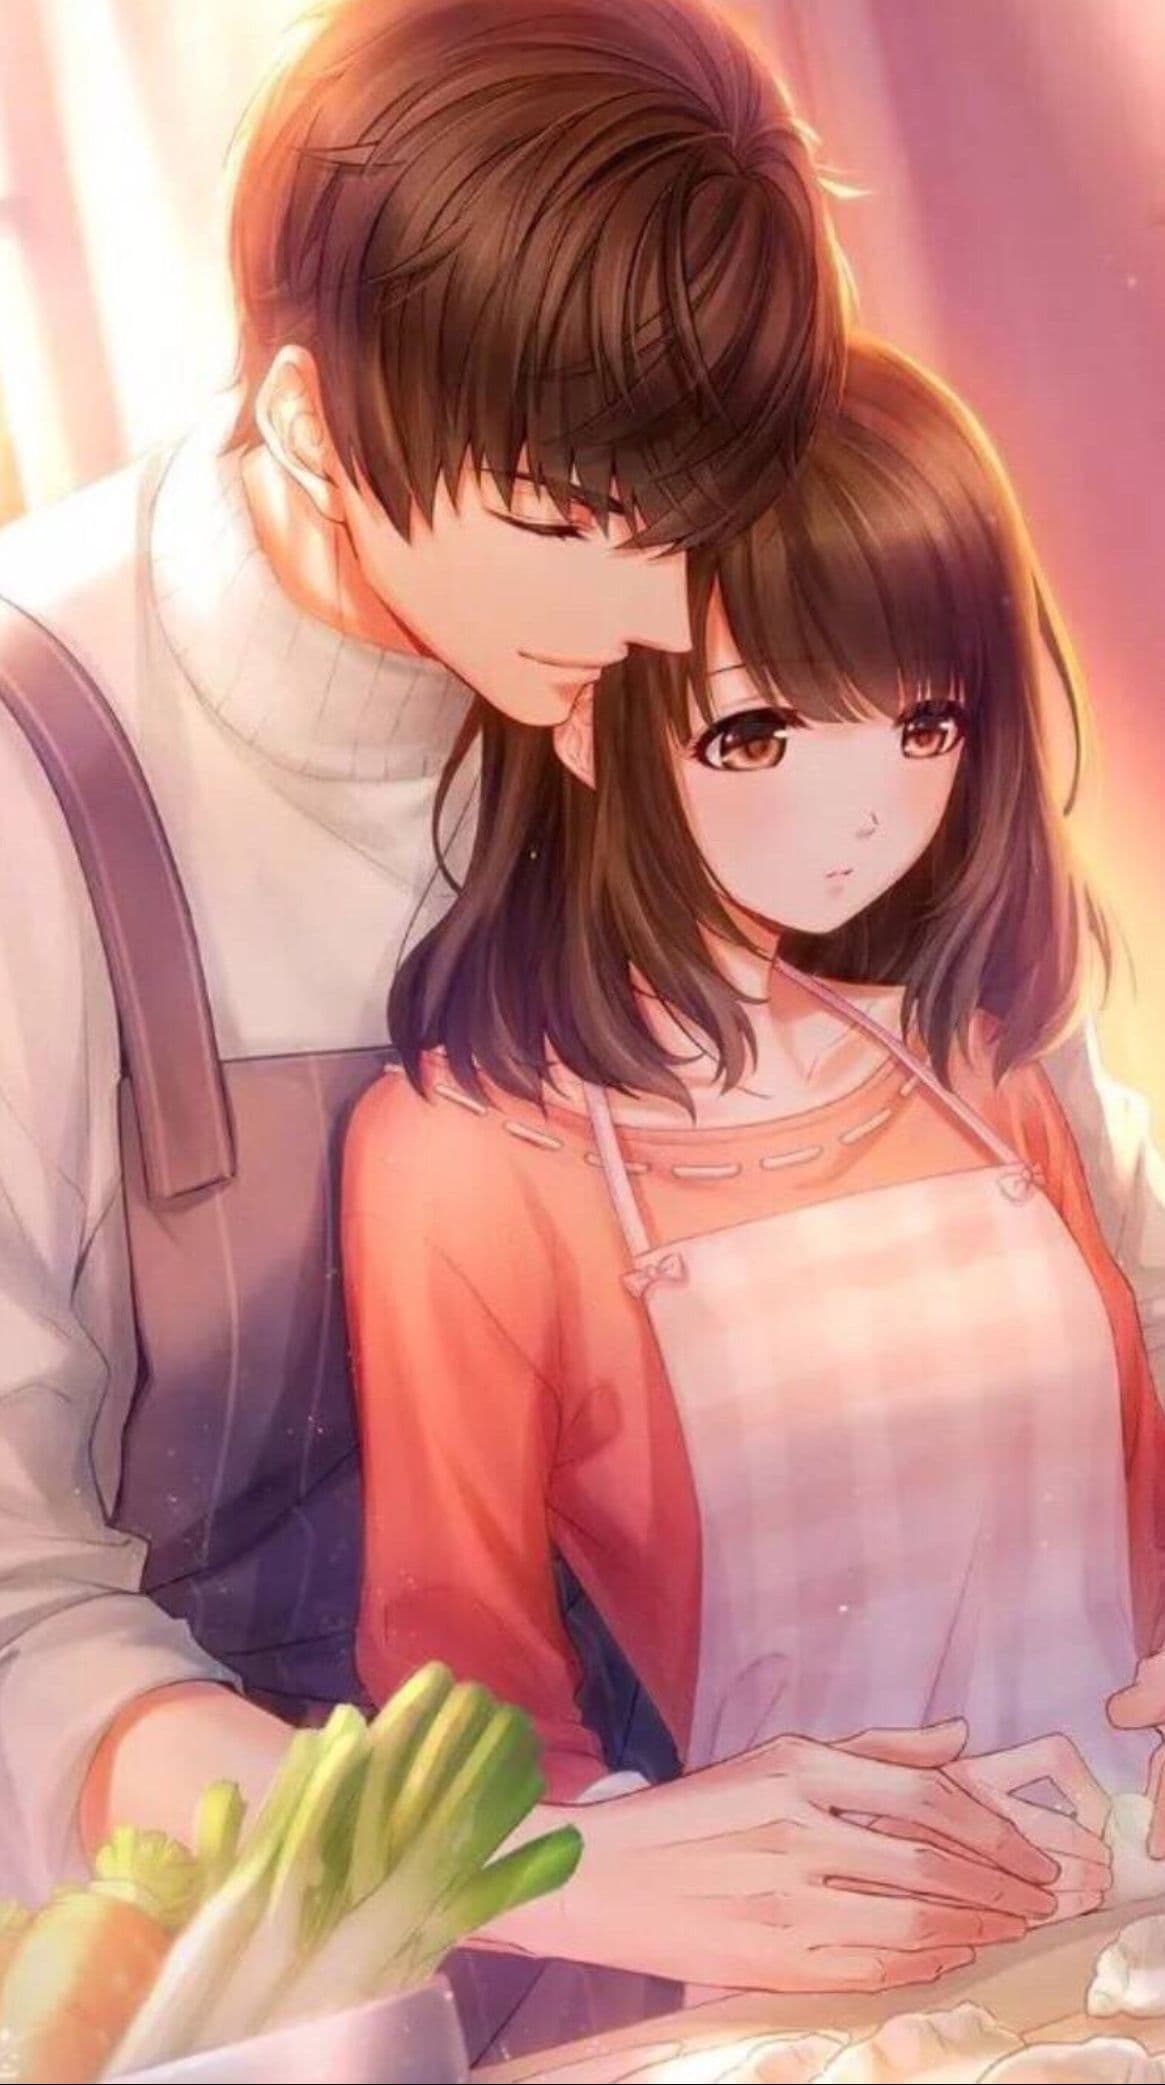 Hình ảnh anime tình yêu cute: Hãy cùng chiêm ngưỡng những hình ảnh anime tình yêu đáng yêu và ngọt ngào nhất trên màn hình. Những cặp đôi anime với tình yêu chân thành sẽ khiến bạn tan chảy trong cảm xúc và không thể nào rời mắt khỏi màn hình.